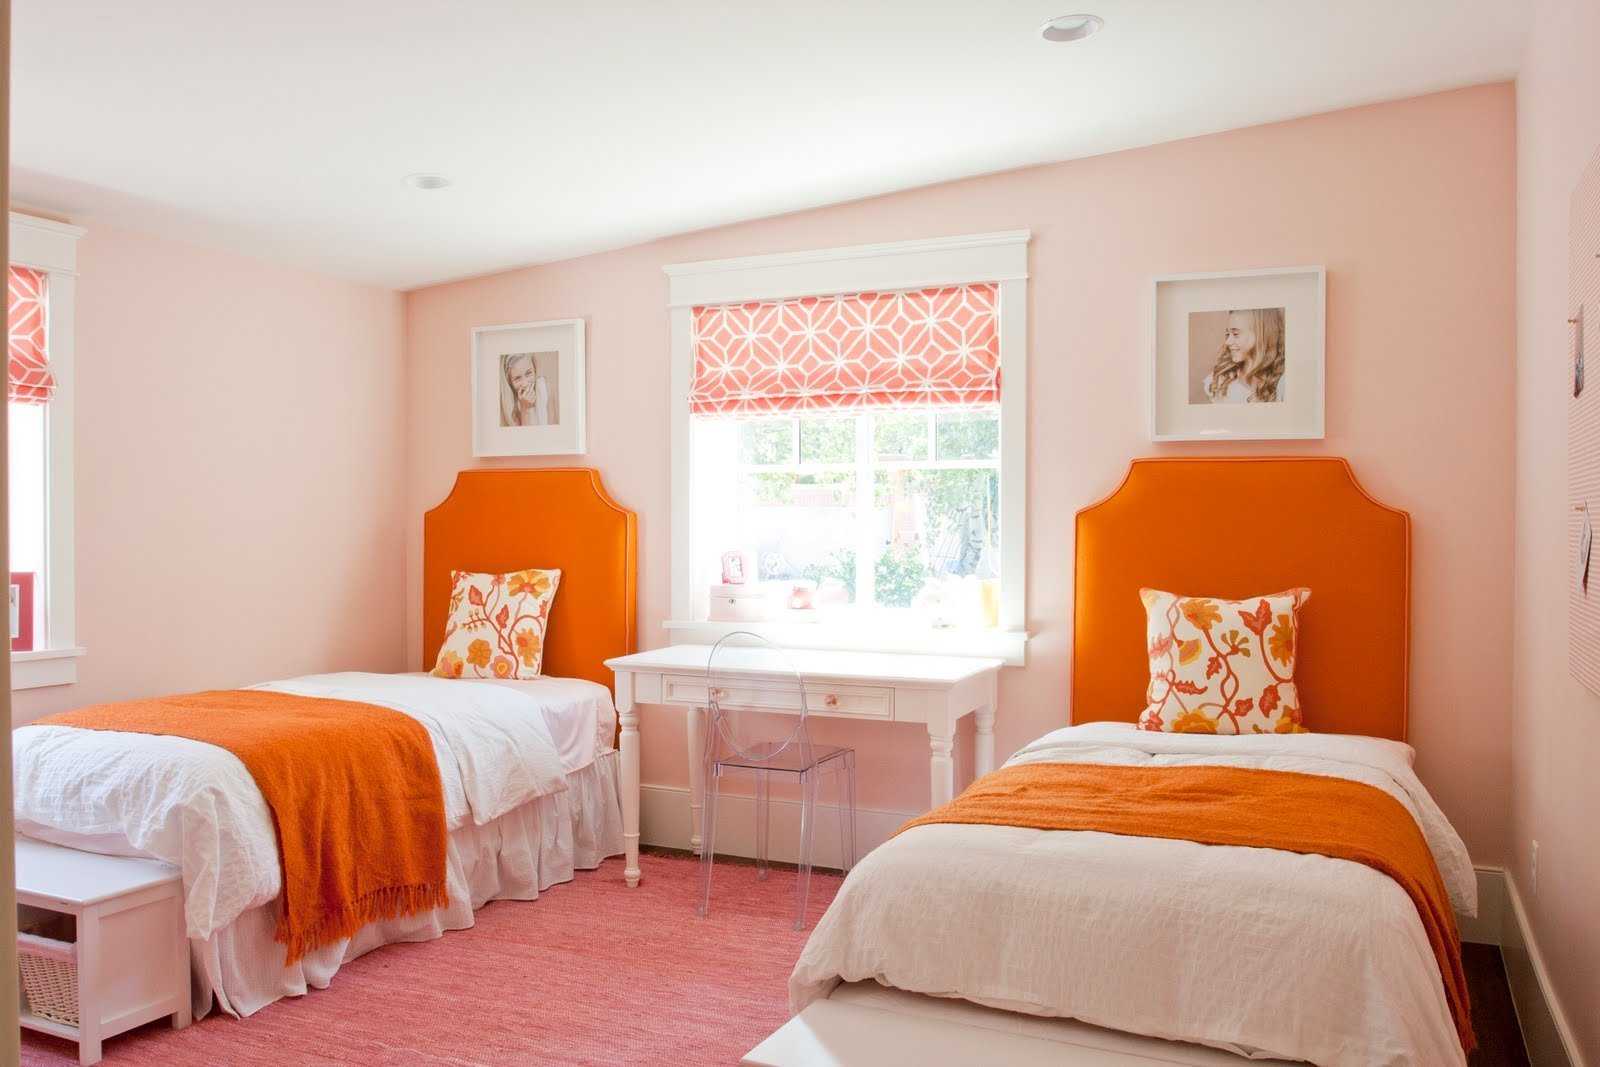 Гостиная в персиковом цвете - 68 фото идей применения наиболее сочных оттенков